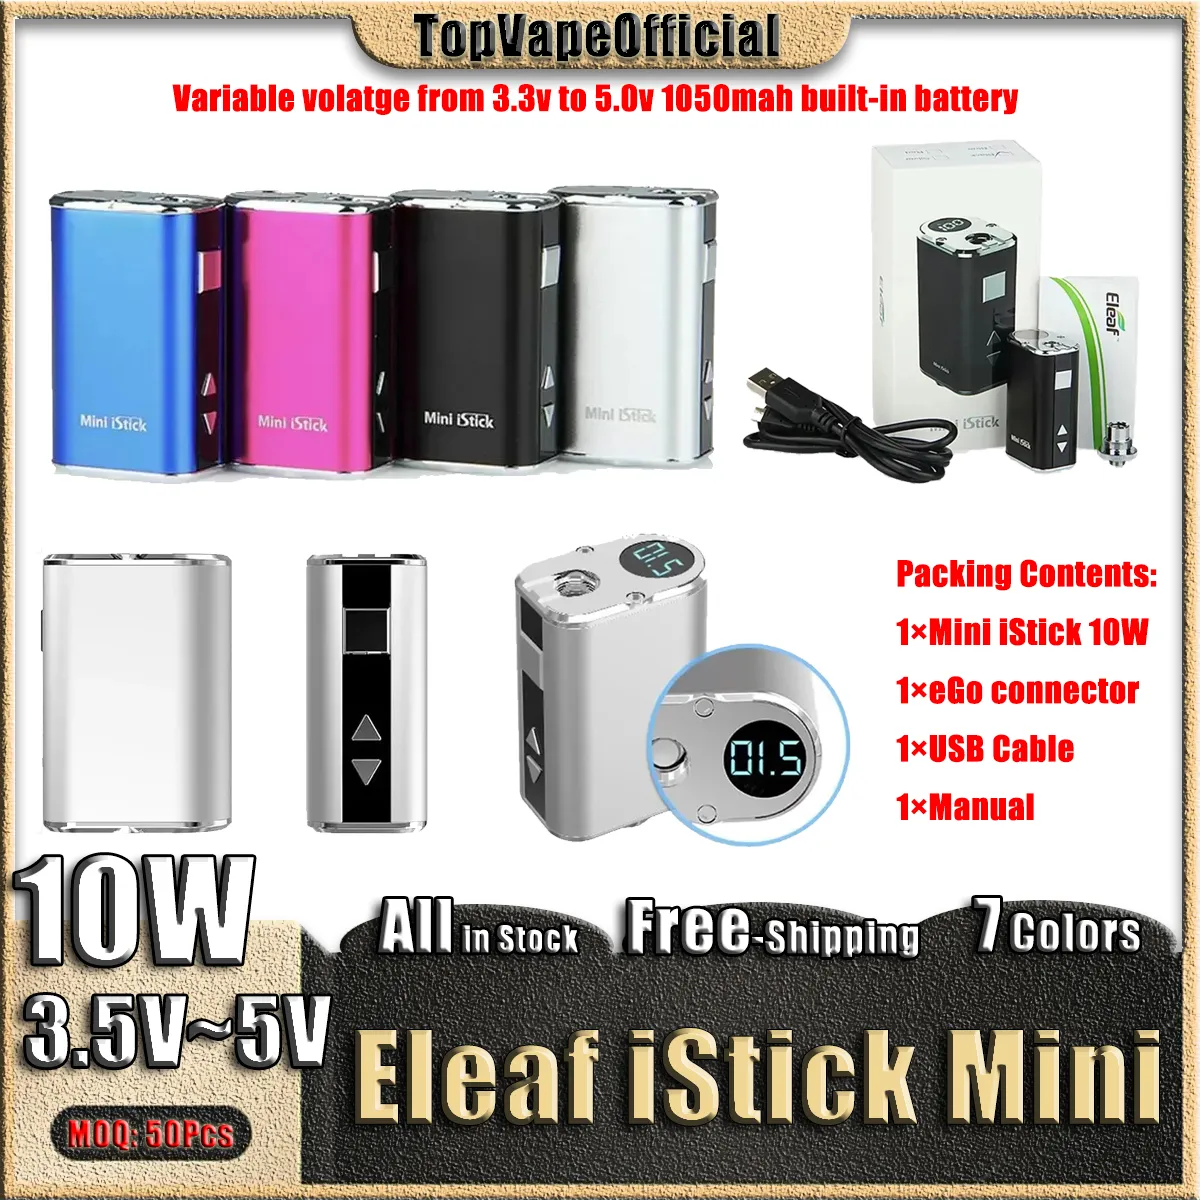 Kit de batterie IVape Eleaf Mini iStick 10W Mod de boîte à tension variable 1050mAh intégré avec câble USB Connecteur eGo inclus Cook